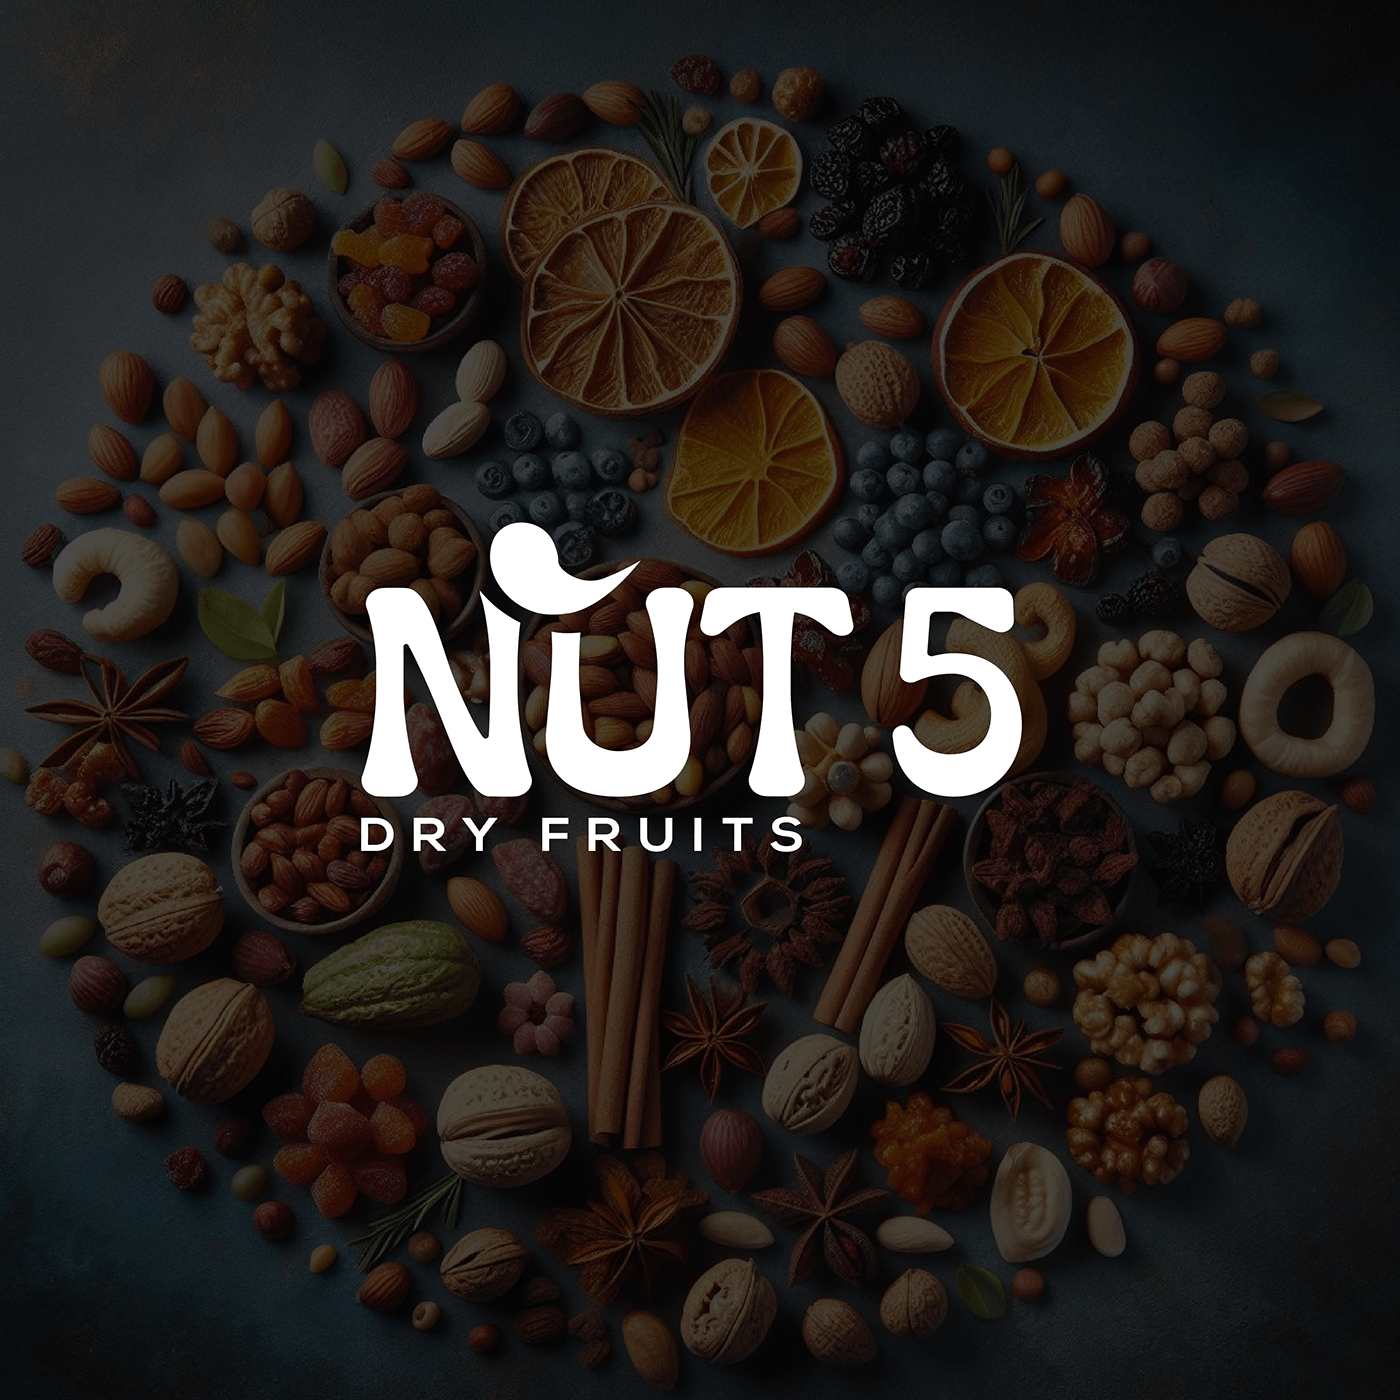 Logo Design nut logo design nut logo dryfruits dryfruitslogodsign dryfruits&nuts Graphic designs branding  identity dry fruits logo